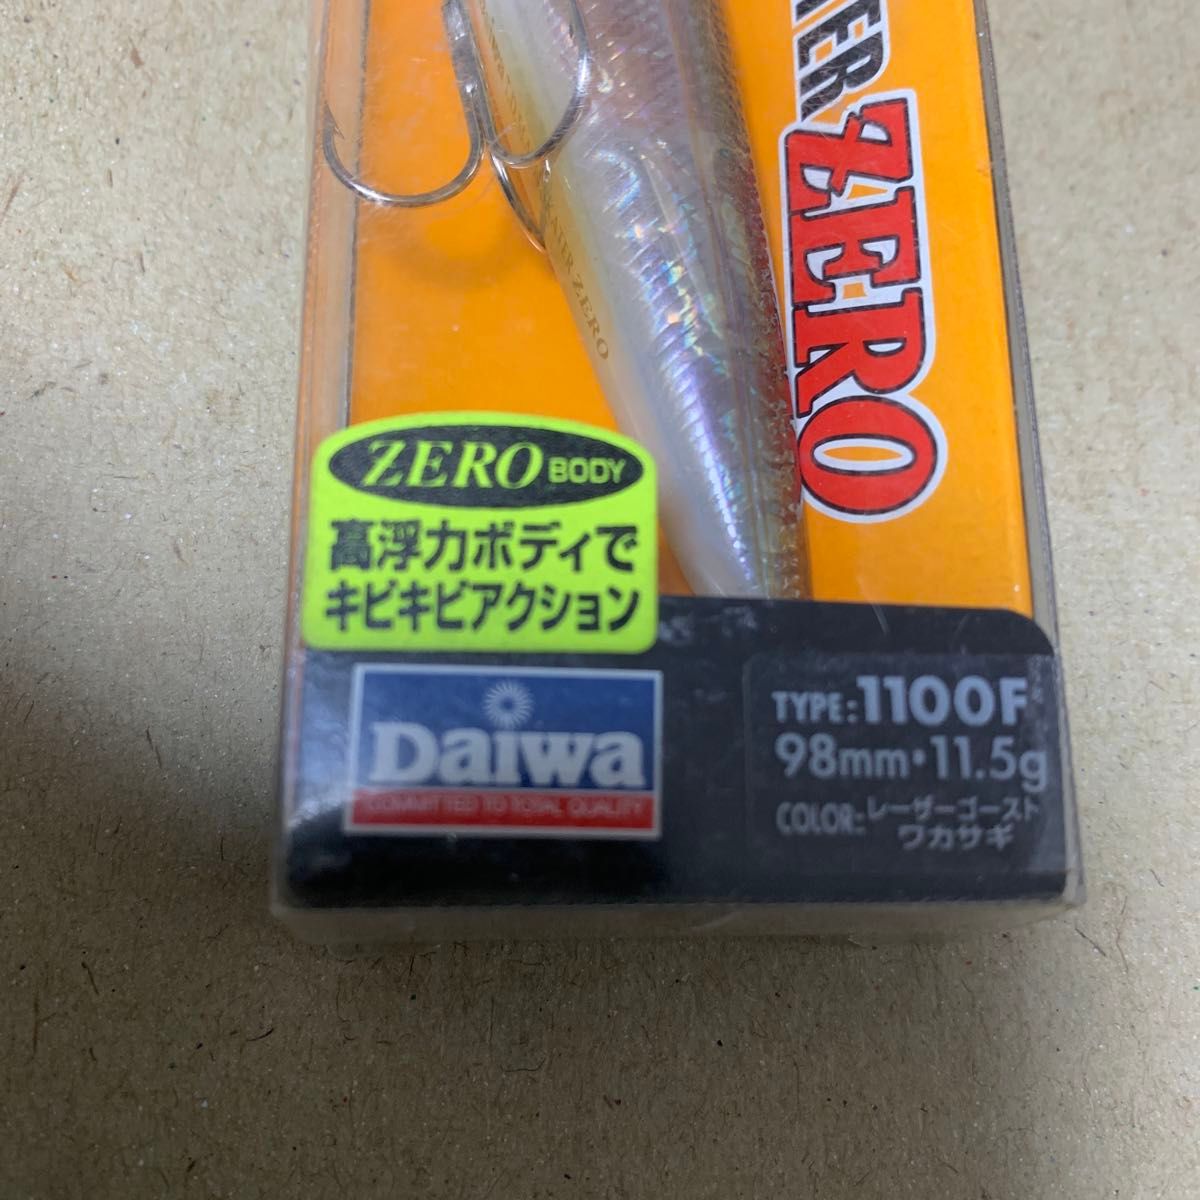 Daiwa TDスラッシュスケーターZERO 1100F 98mm 11.5g レーザーゴーストワカサギ